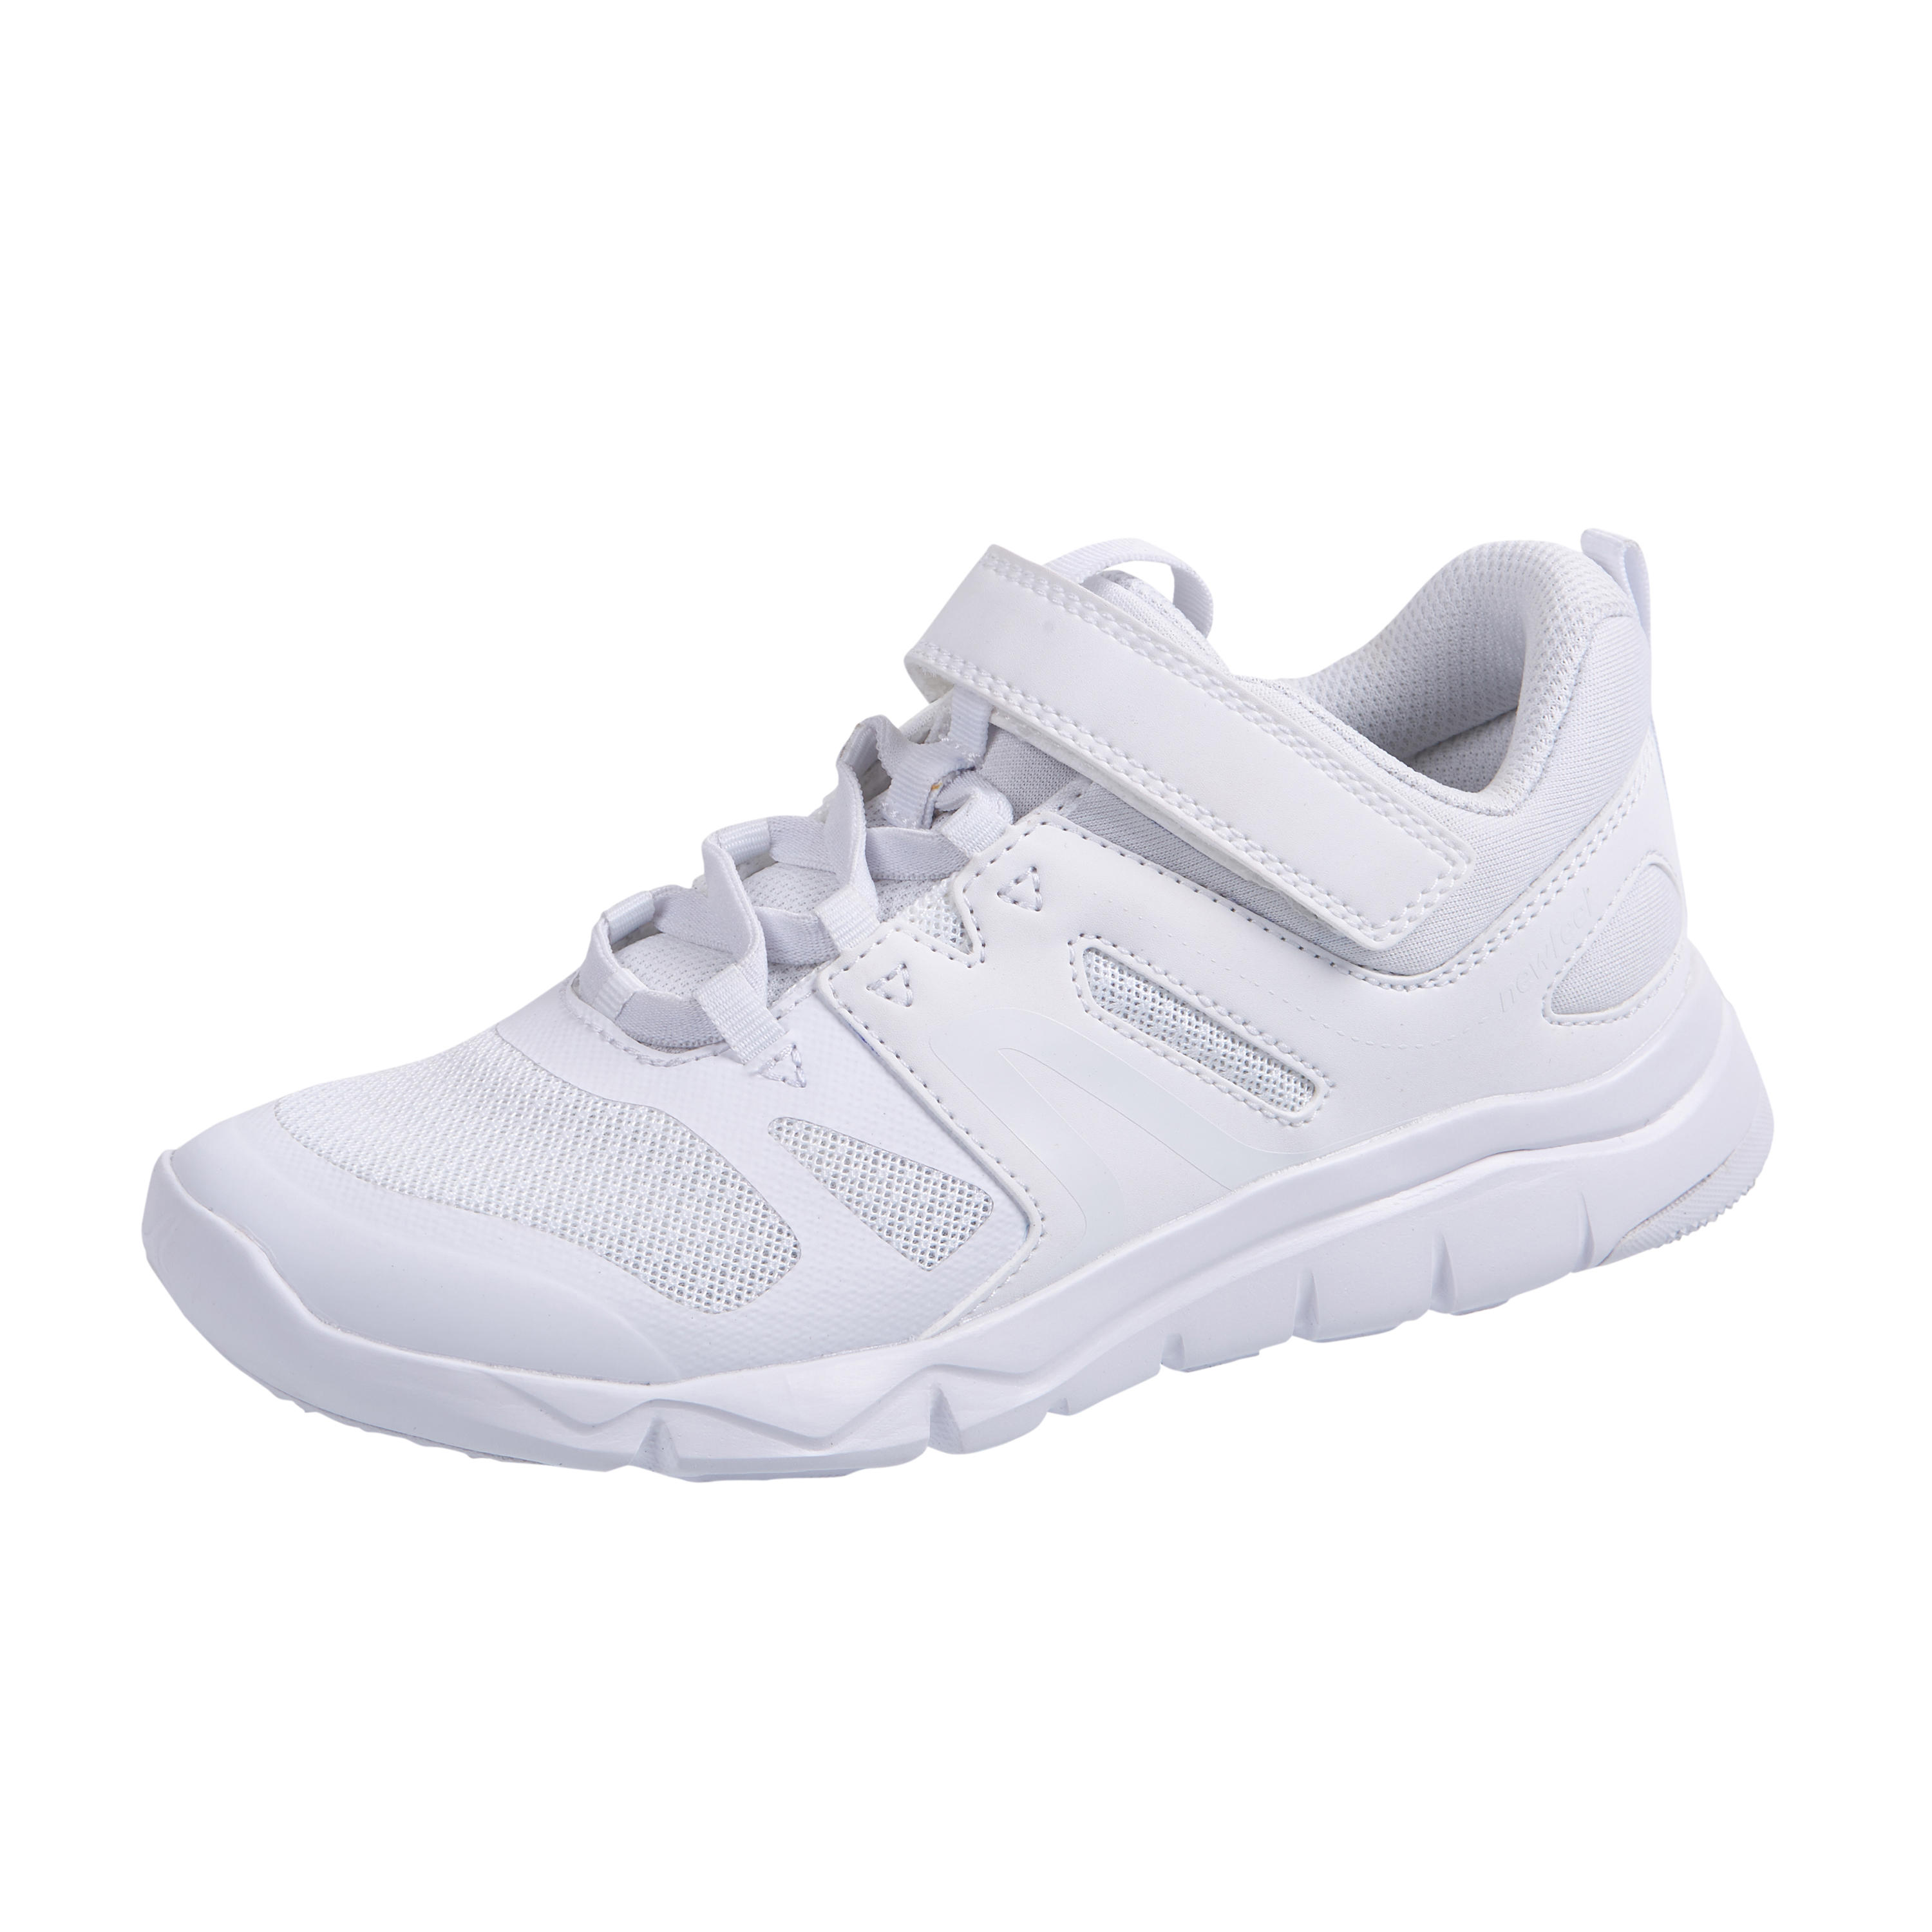 Kids Sport Walking Shoes PW 540 - White